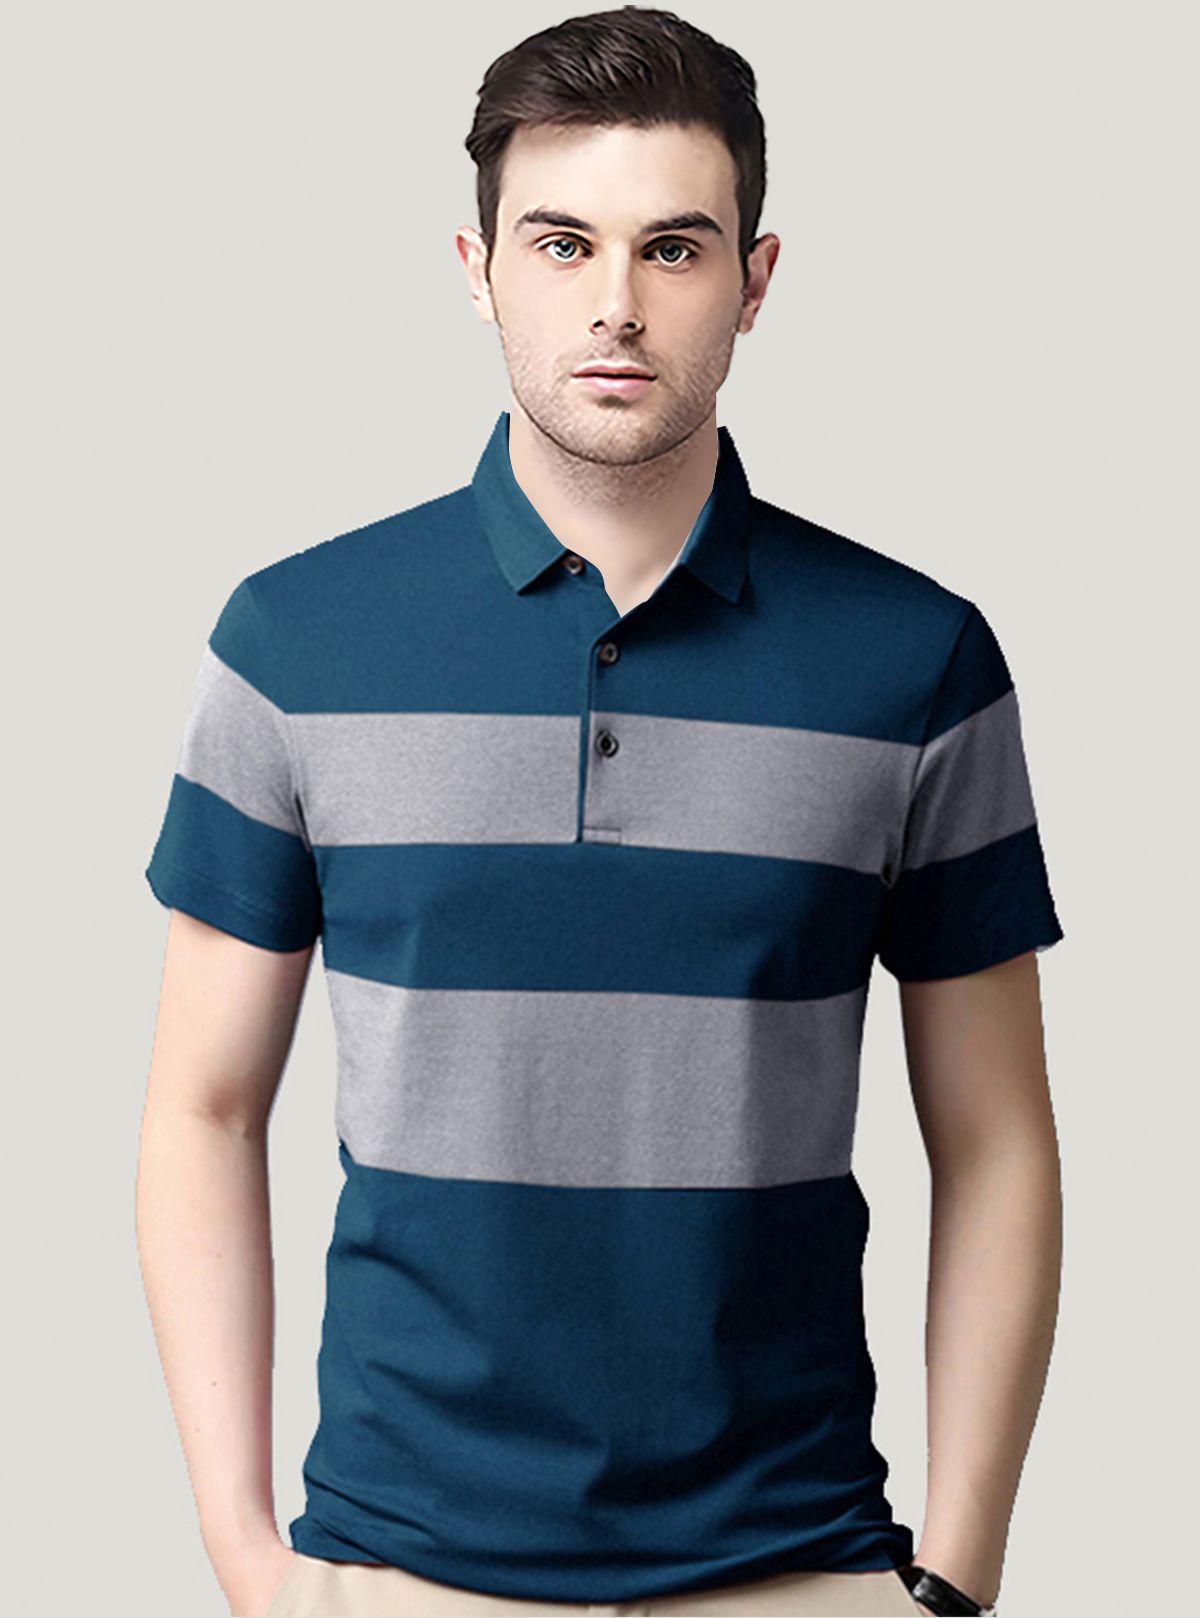     			AUSK - Teal Blue Cotton Blend Regular Fit Men's Polo T Shirt ( Pack of 1 )